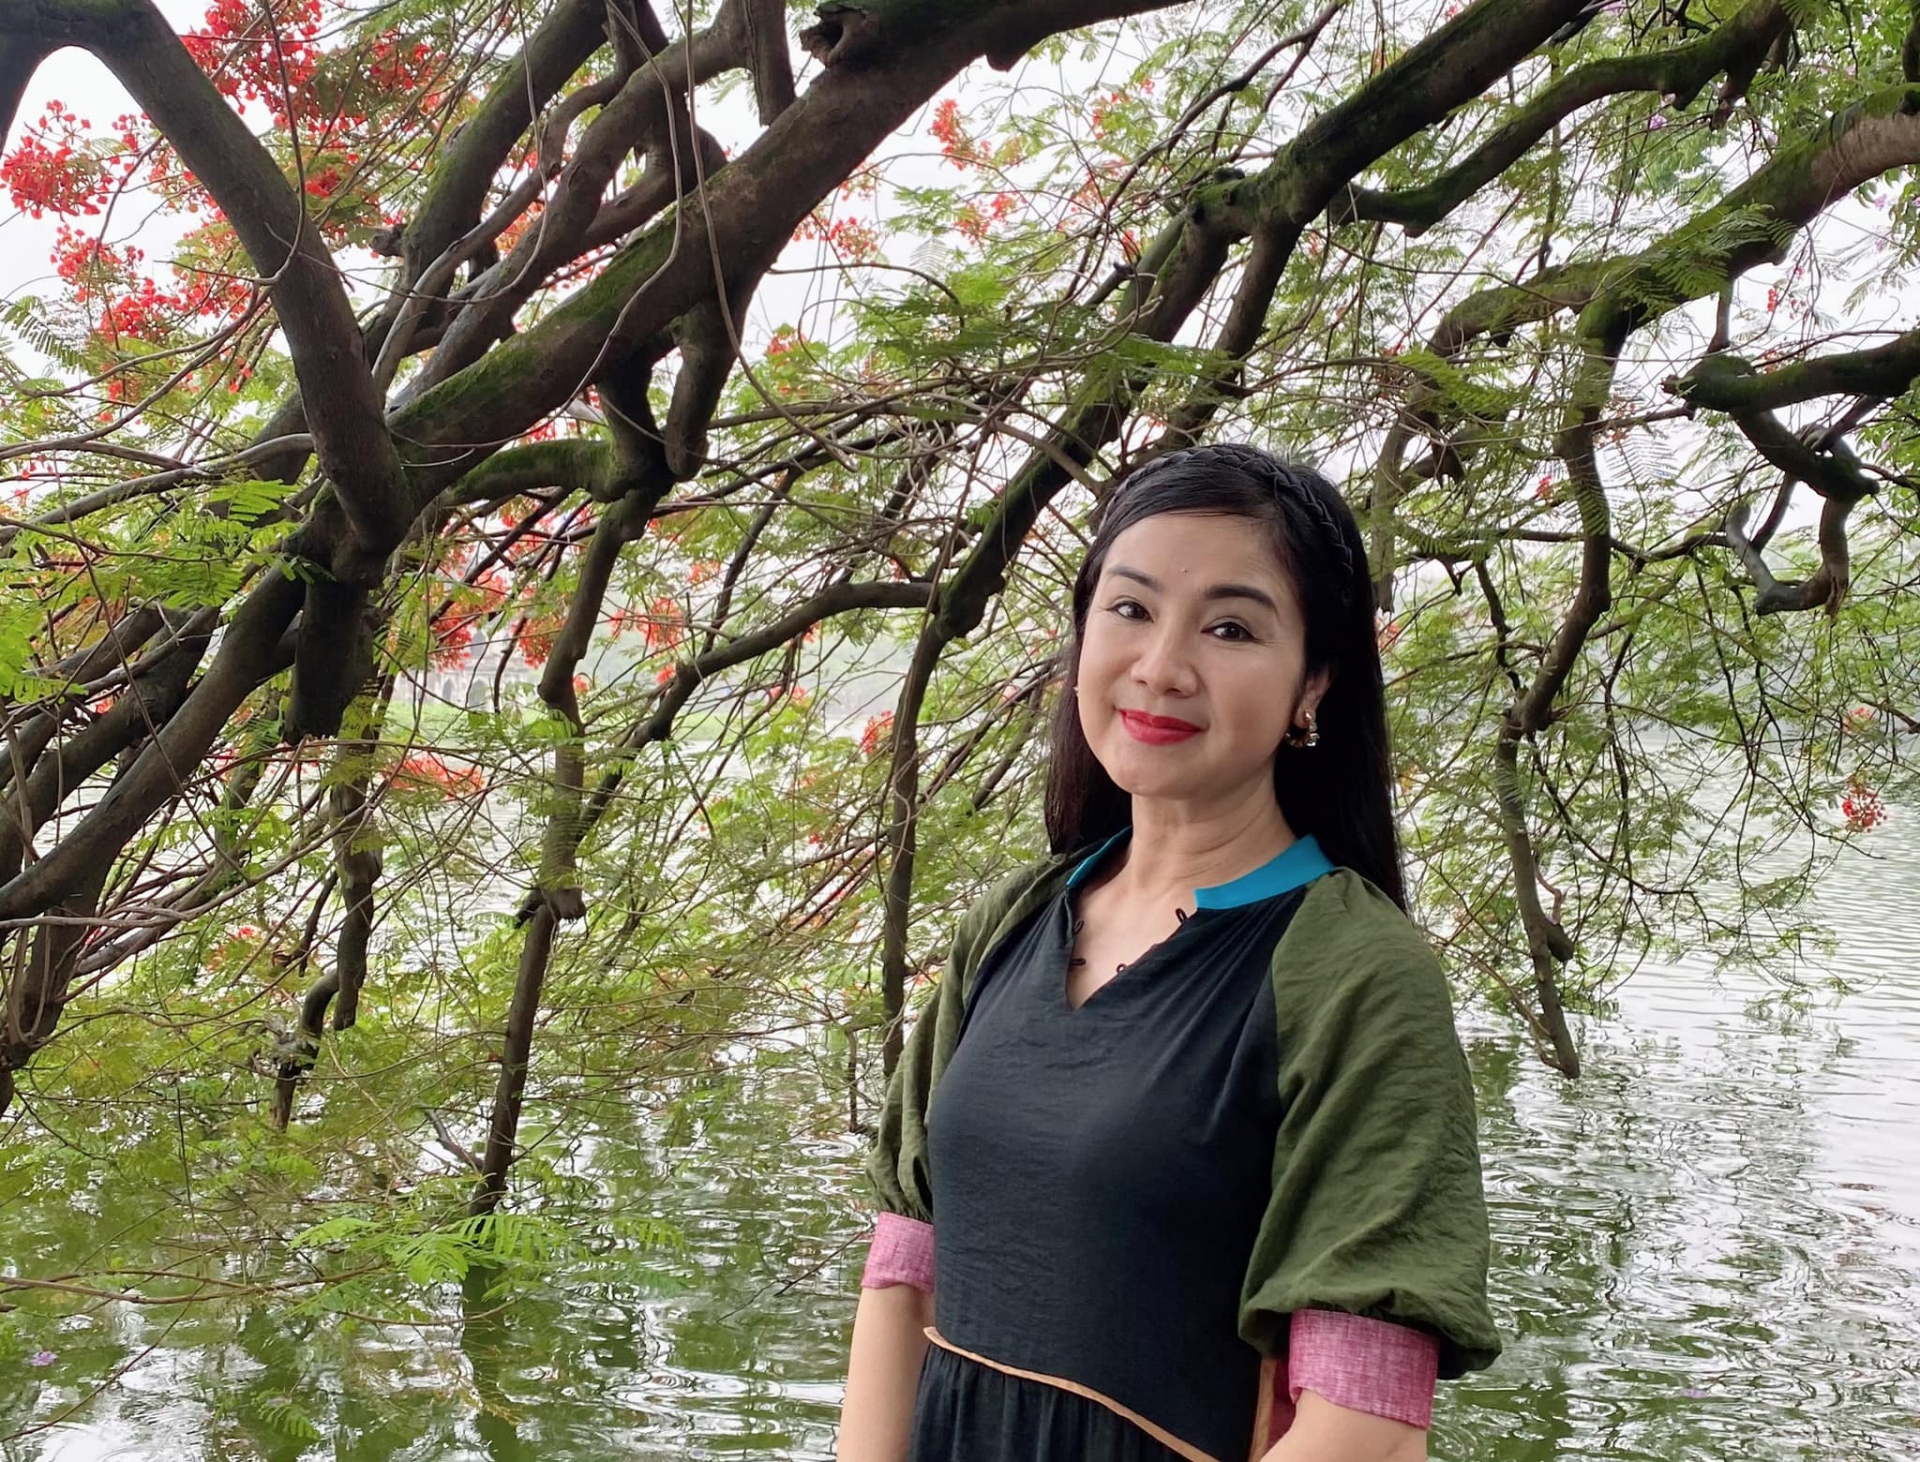 NSND Thu Hà mặc áo dài dạo Bờ Hồ giữa mùa đông tháng 5, nhan sắc nền nã tuổi 53 - Ảnh 2